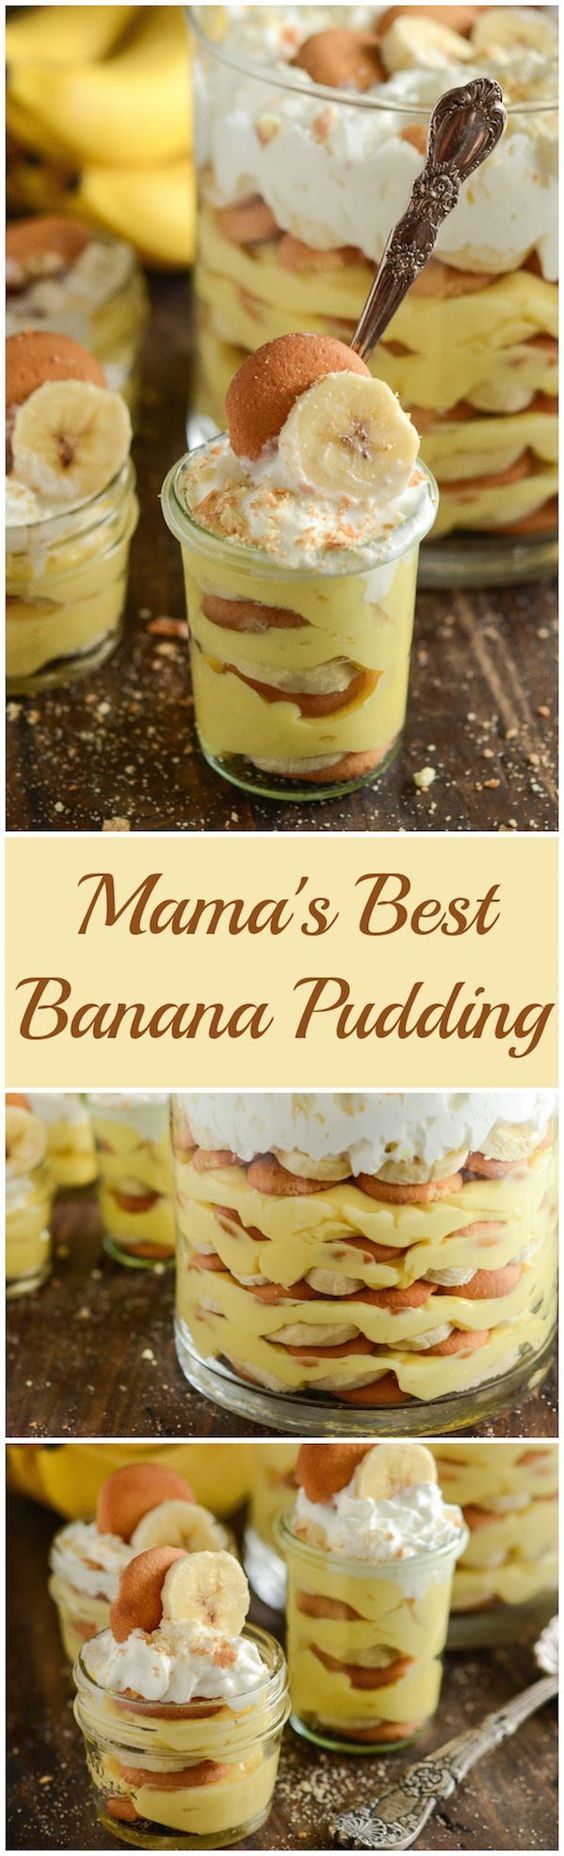 banana pudding recipes